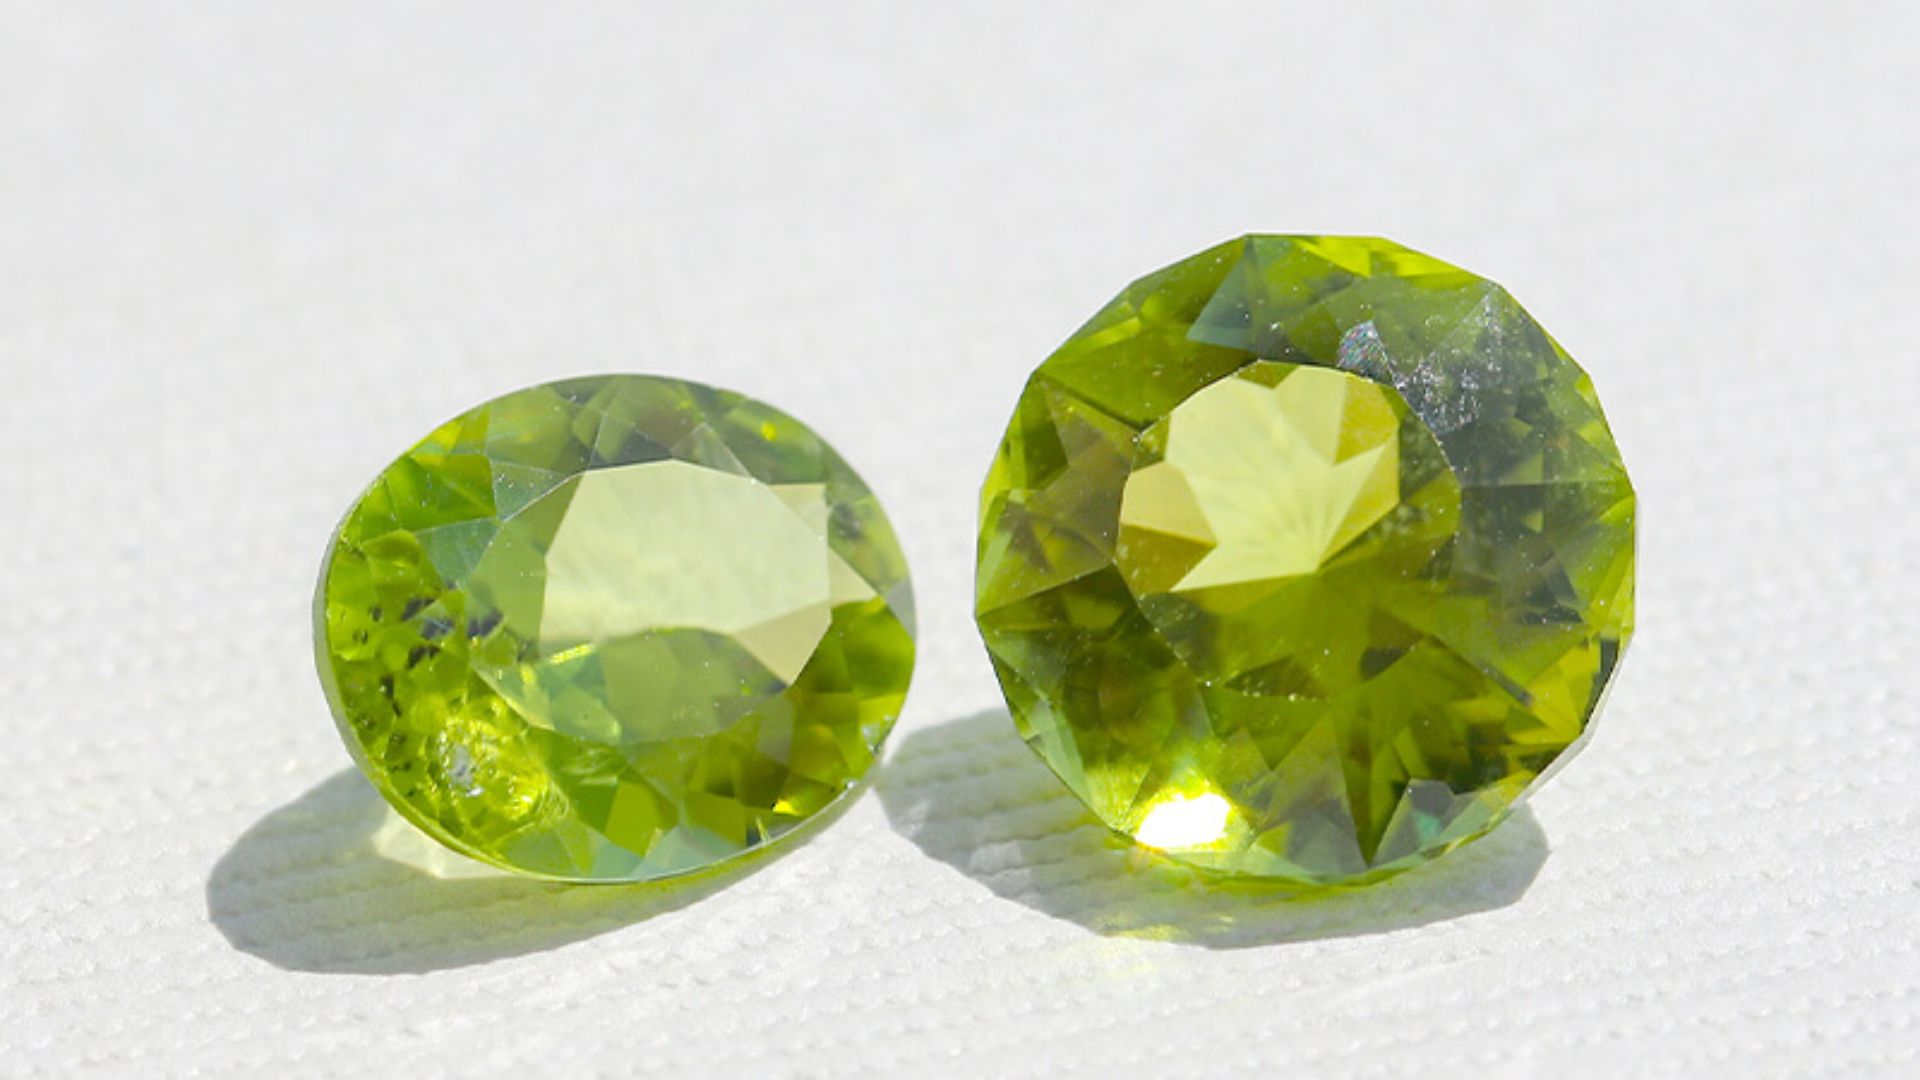 Two Peridot Gemstones Side By Side